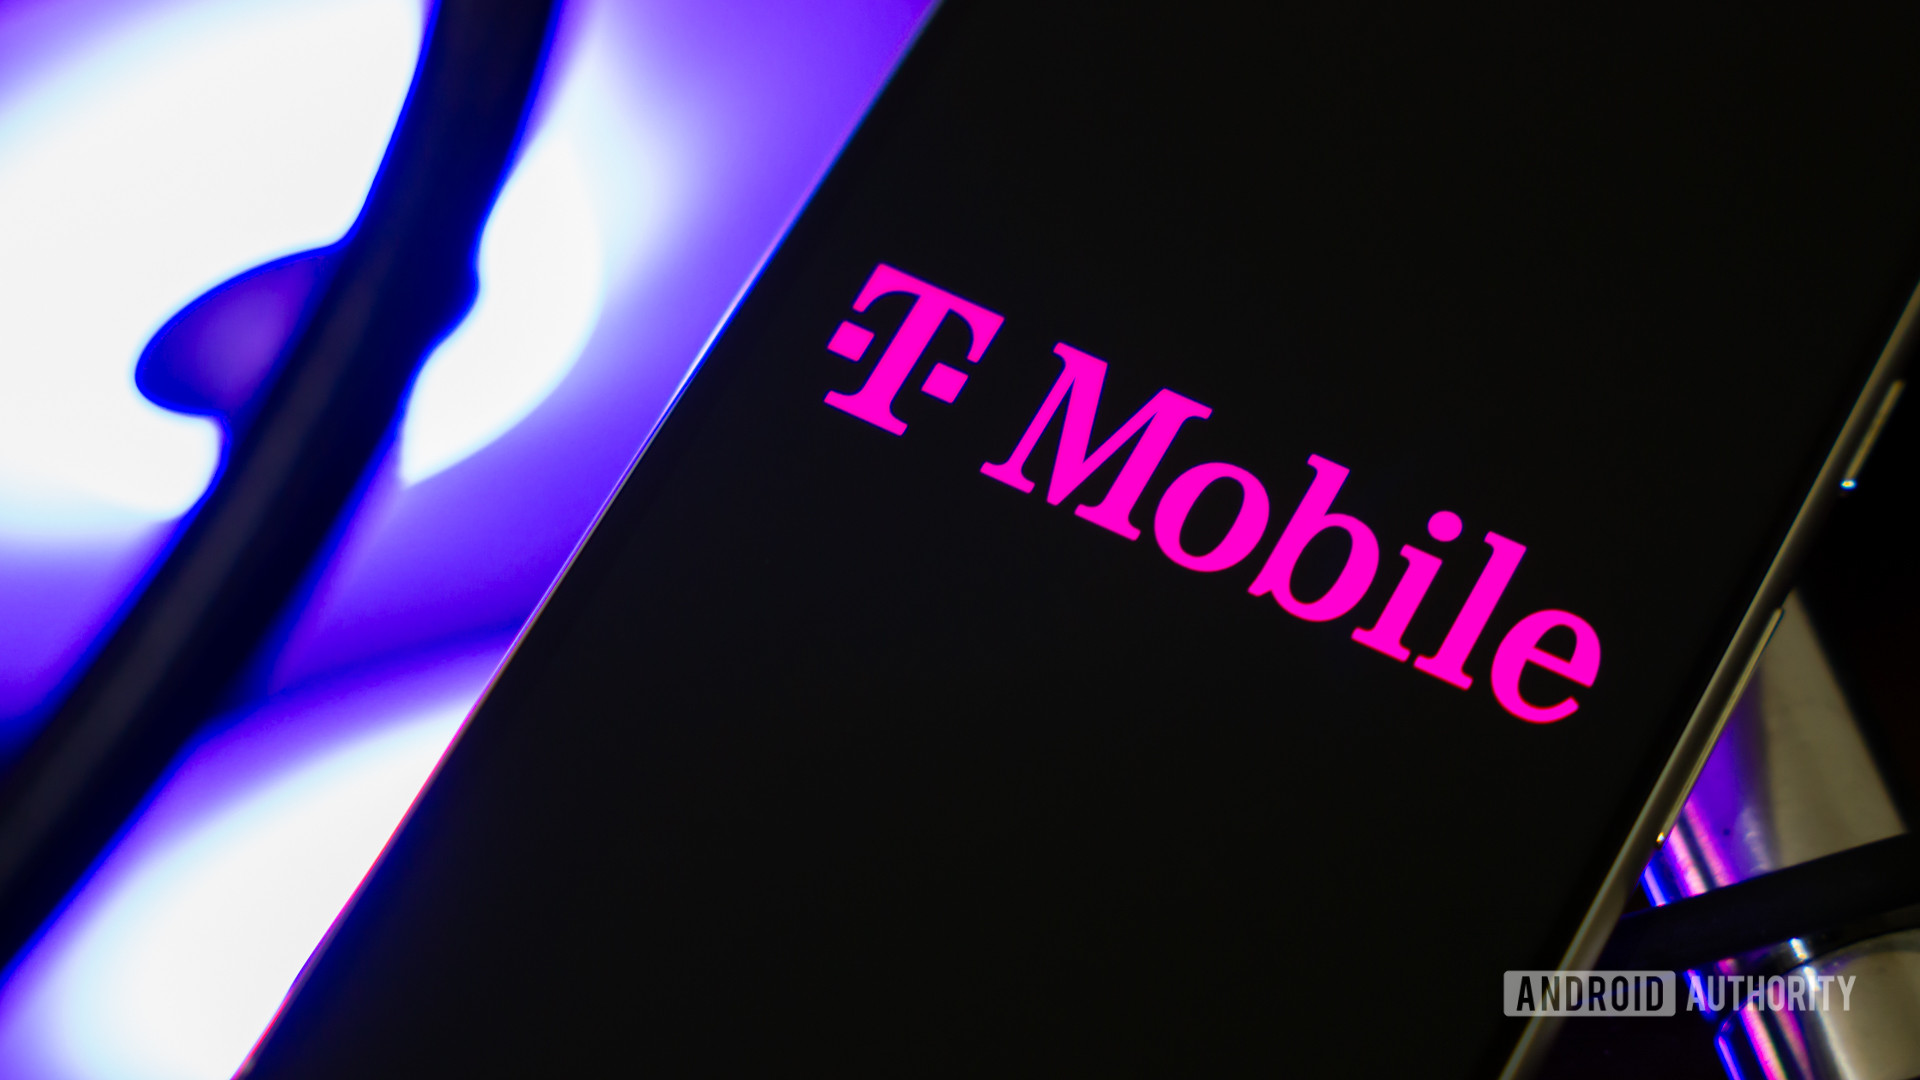 Los empleados de T-Mobile informan haber sido atraídos para estafar a los clientes (Actualización: declaración de T-Mobile)